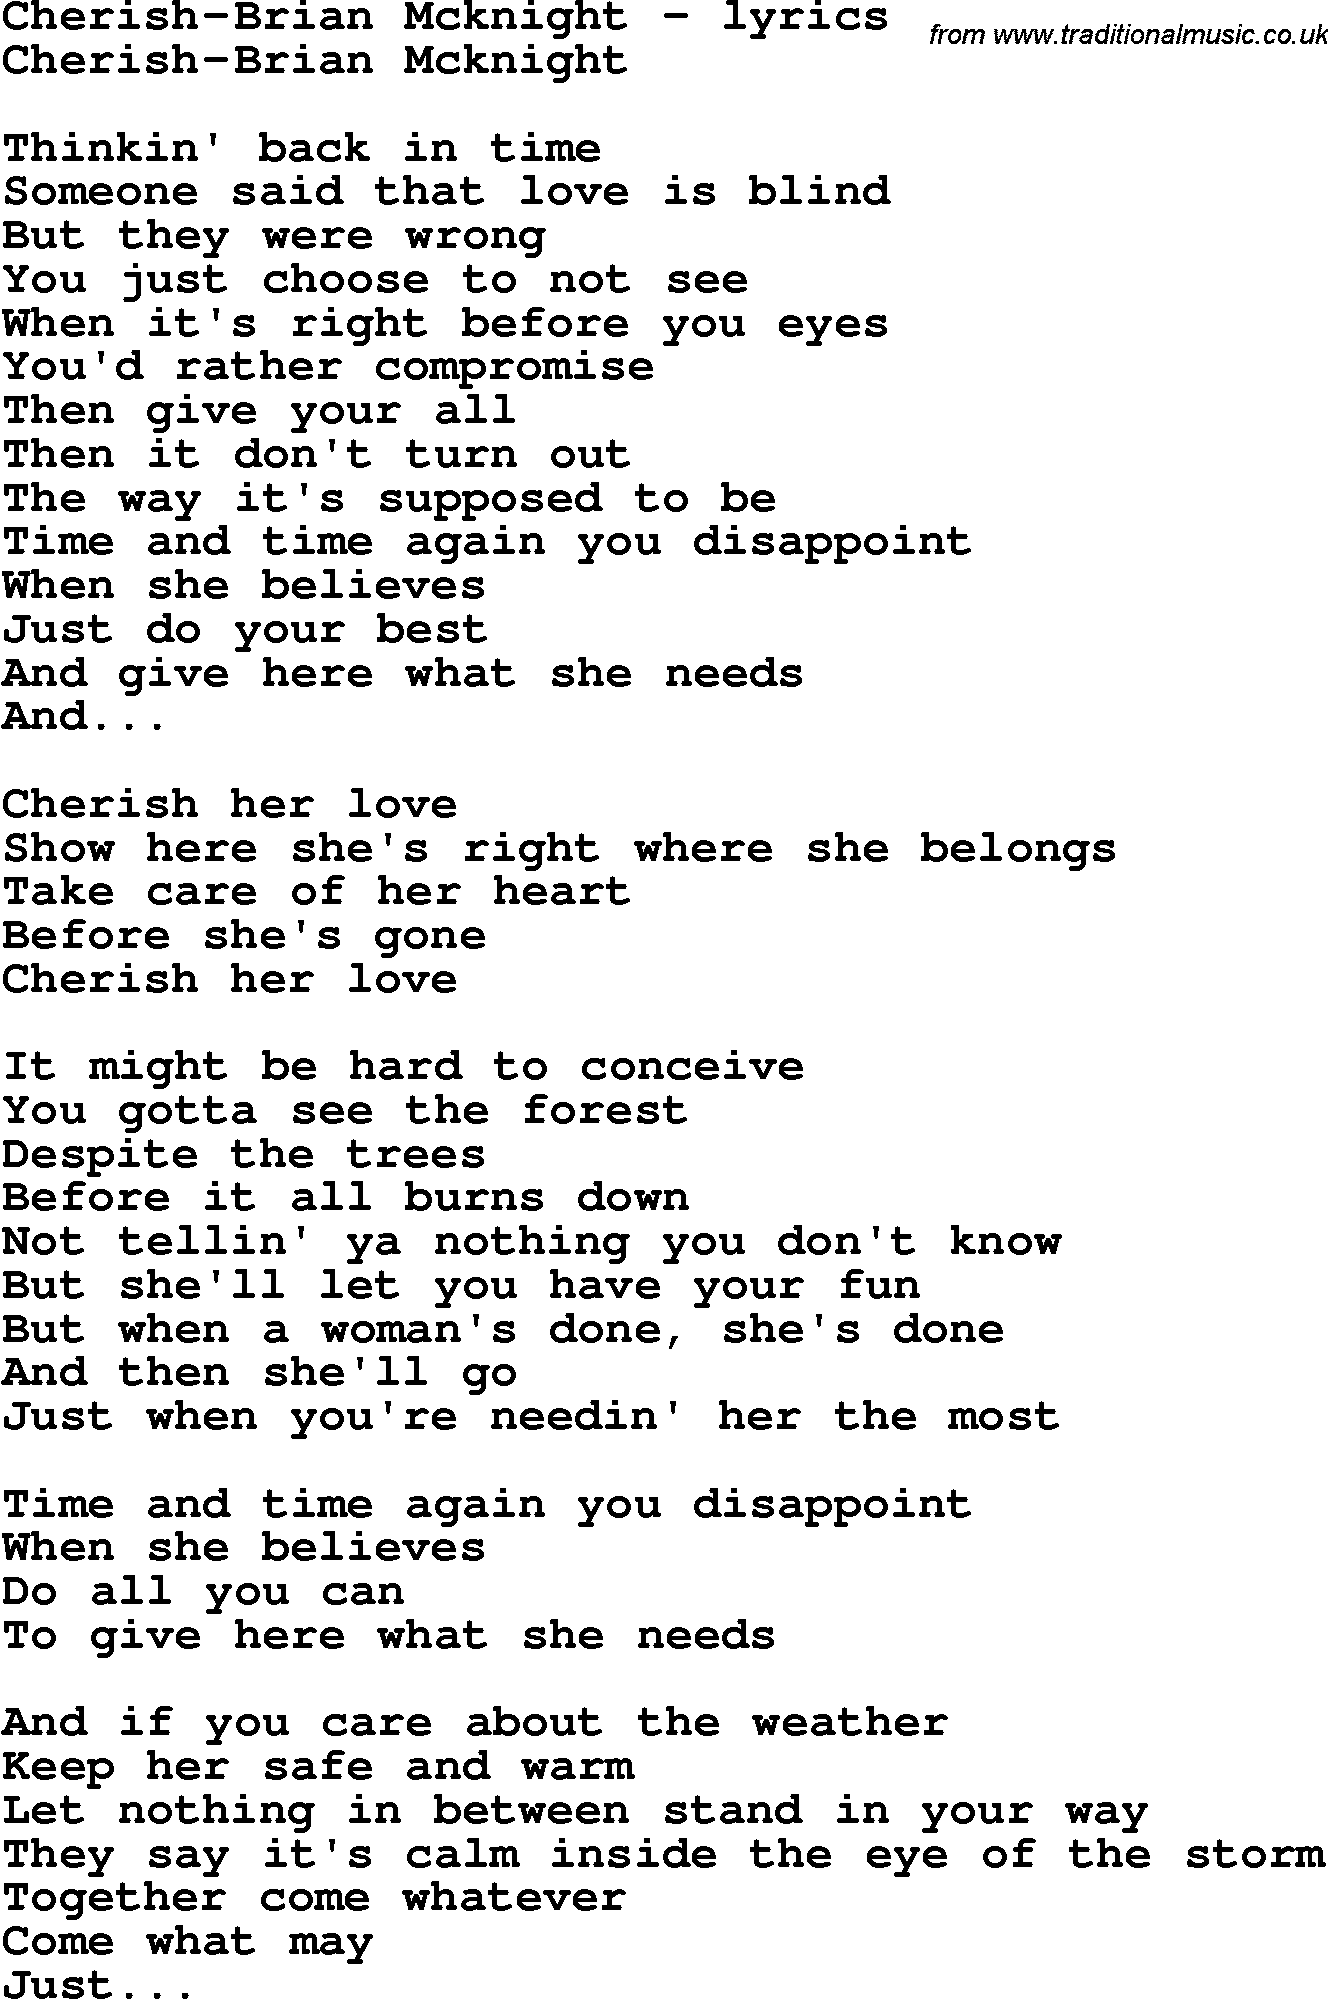 Love Song Lyrics for: Cherish-Brian Mcknight